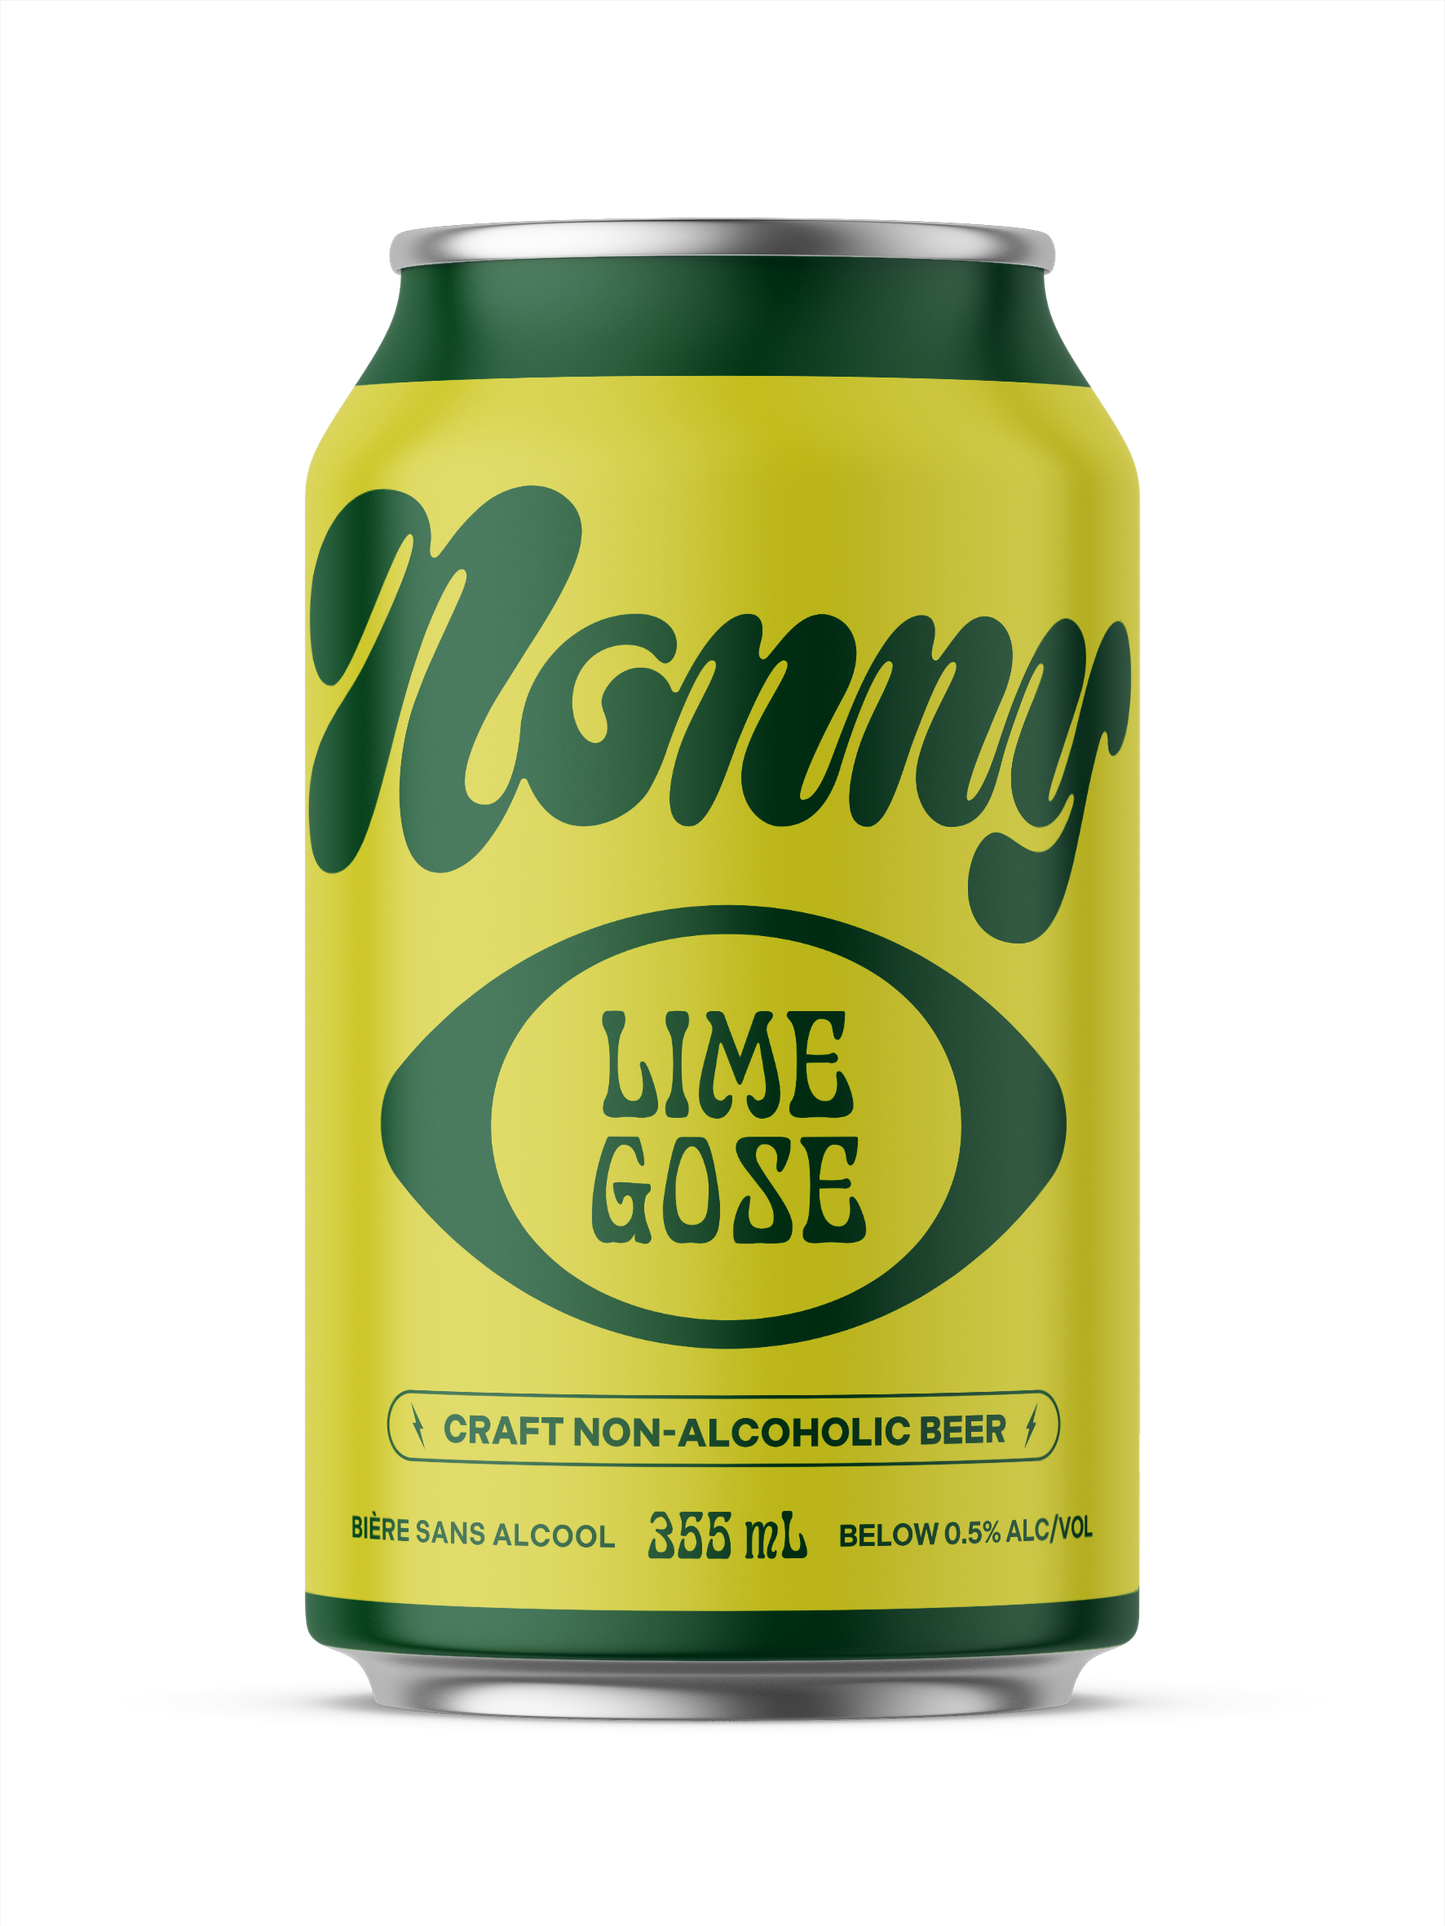 Nonny Lime Gose - Nonny Beer